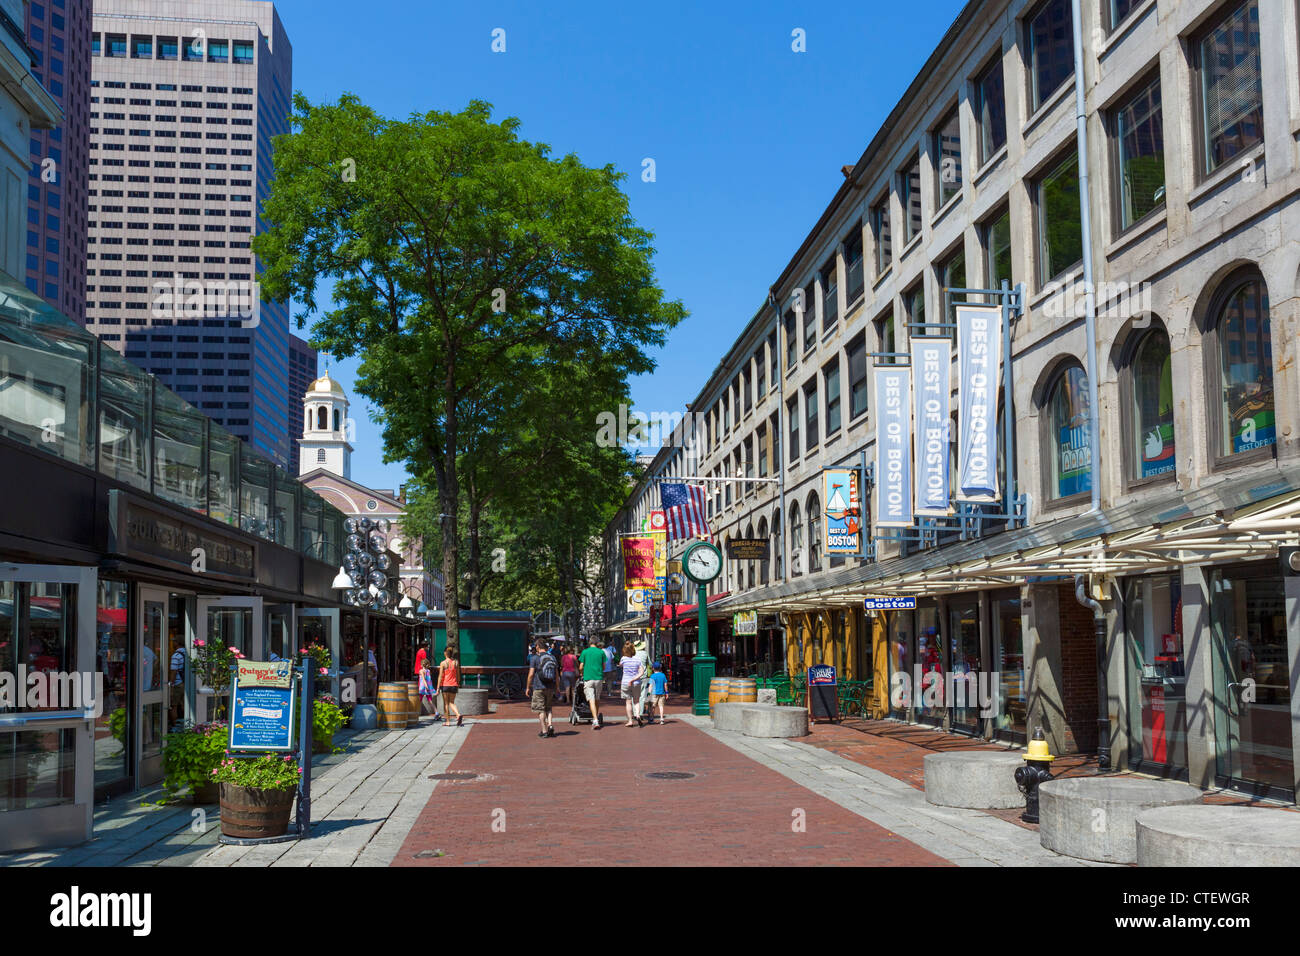 Quincy Market nello storico centro cittadino di Boston, Massachusetts, STATI UNITI D'AMERICA Foto Stock